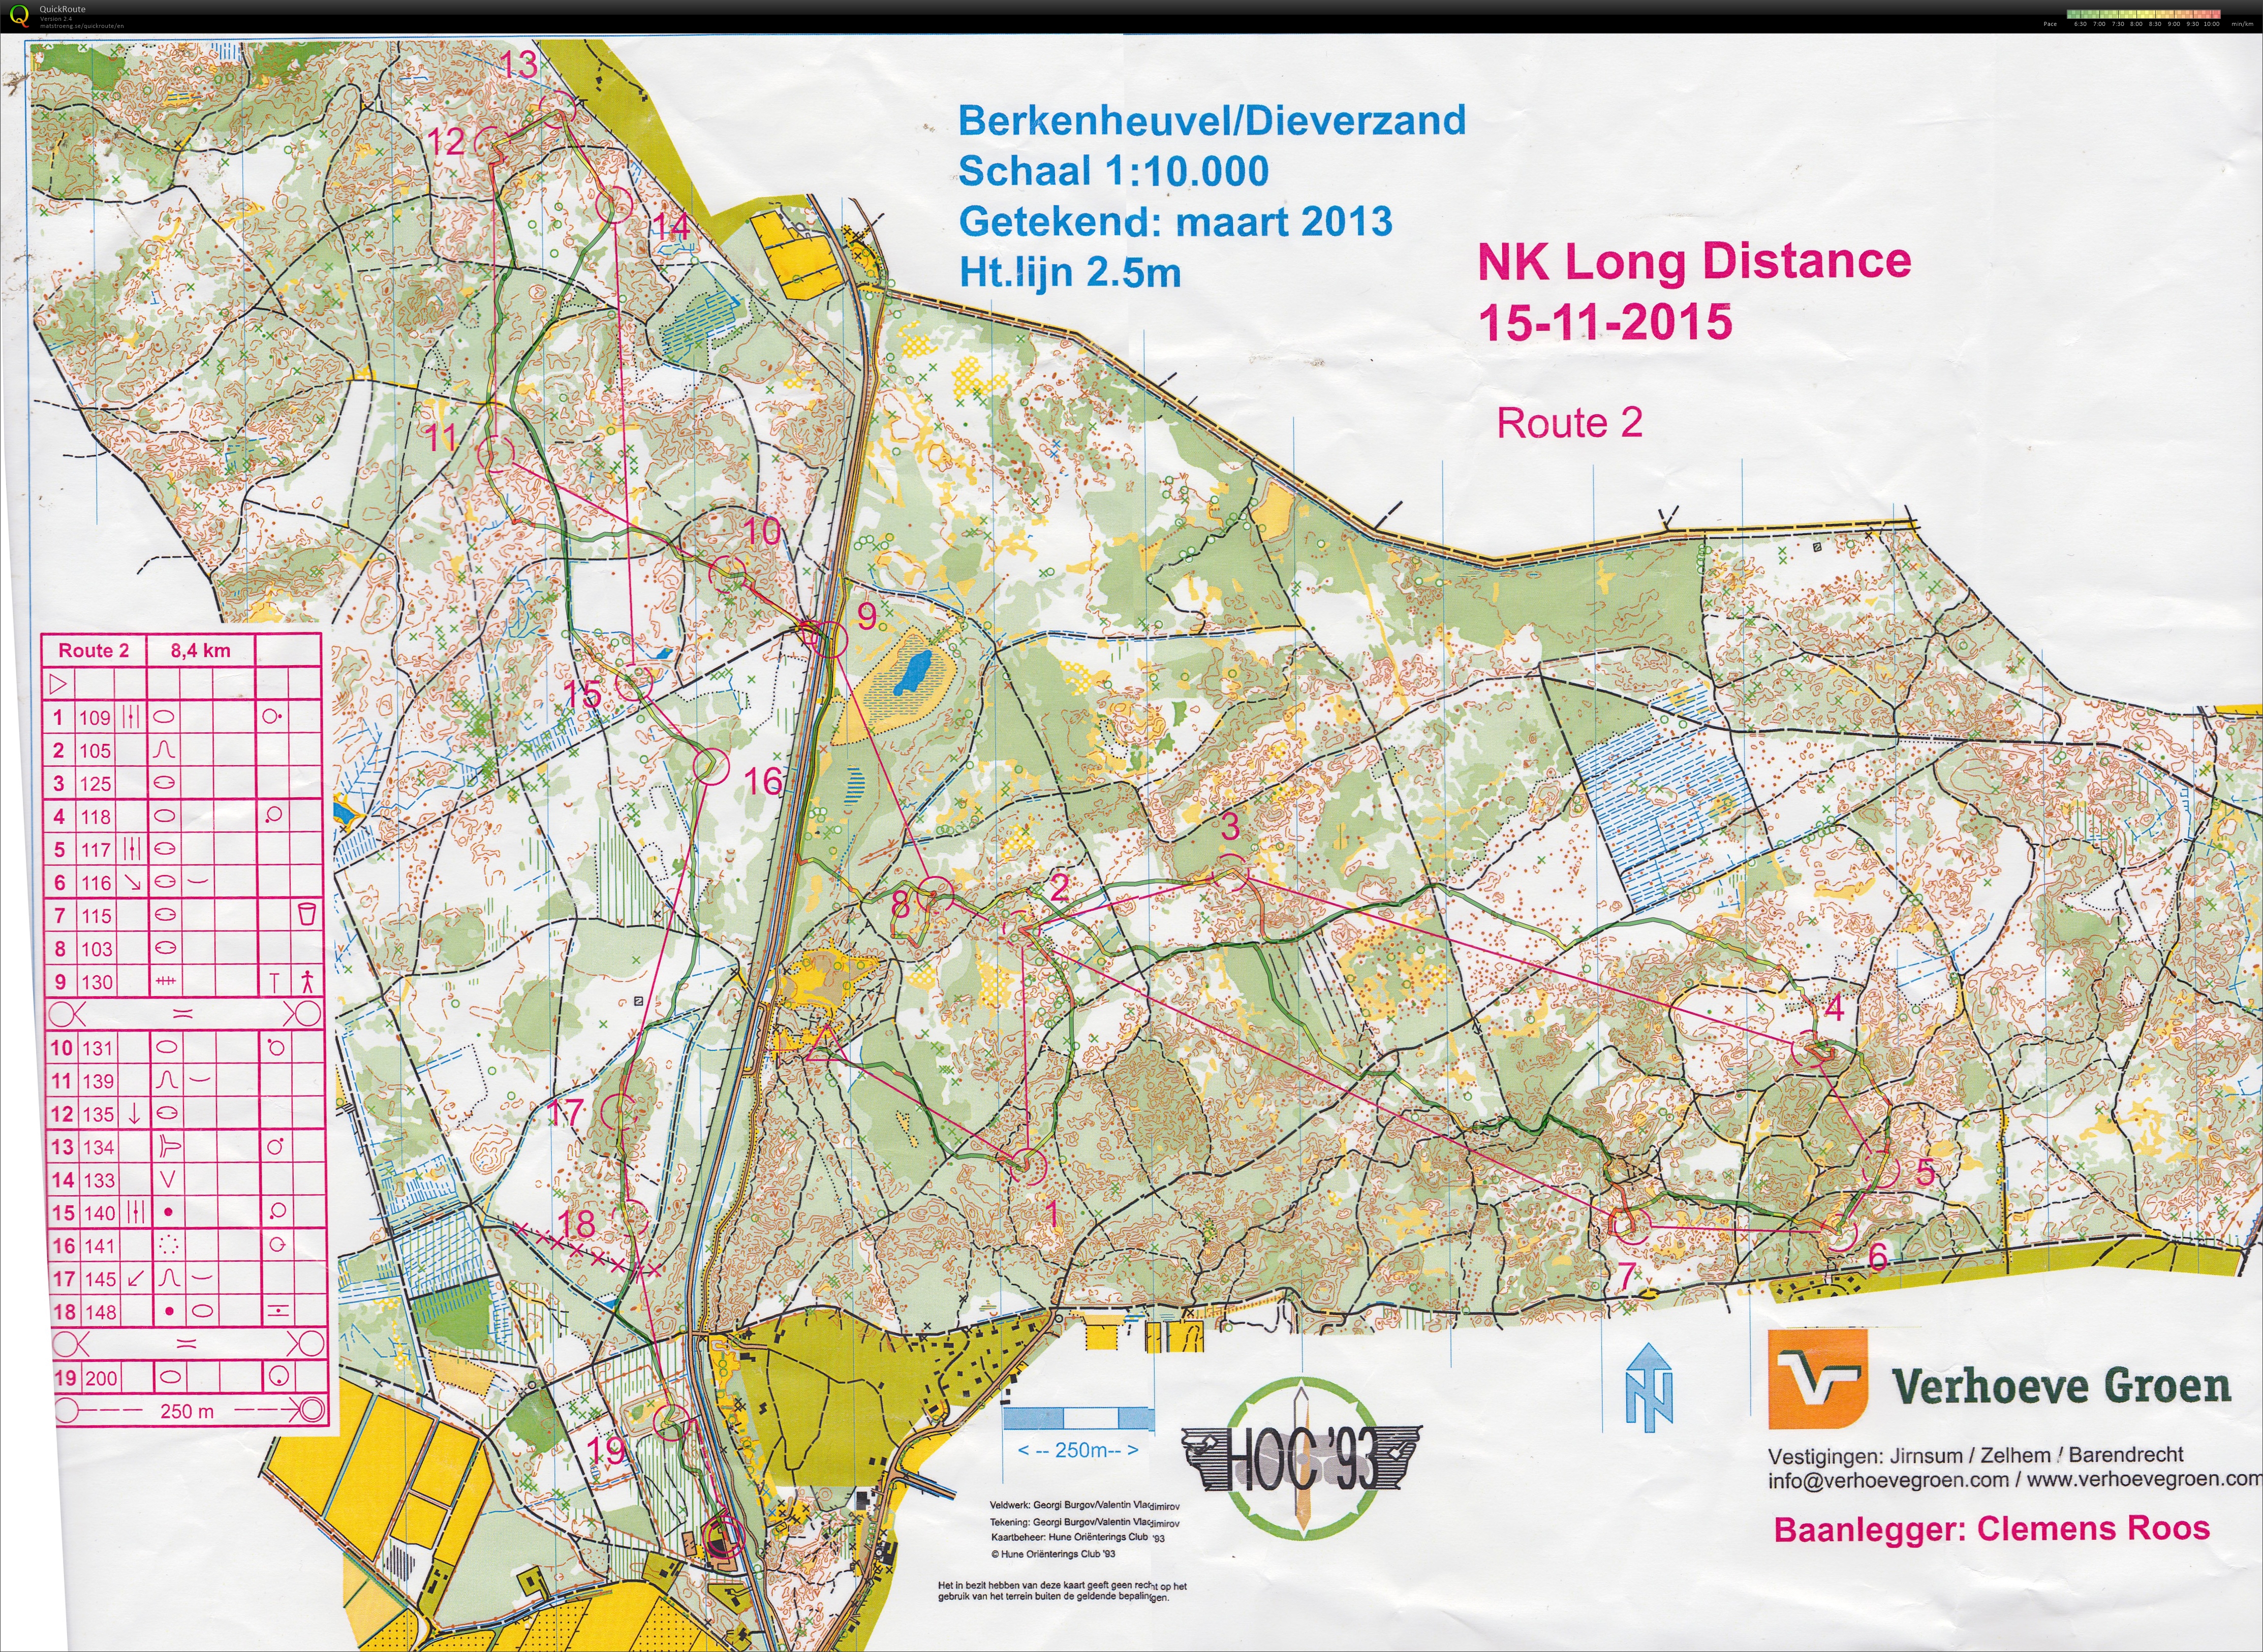 Dutch Champs Long distance (15-11-2015)